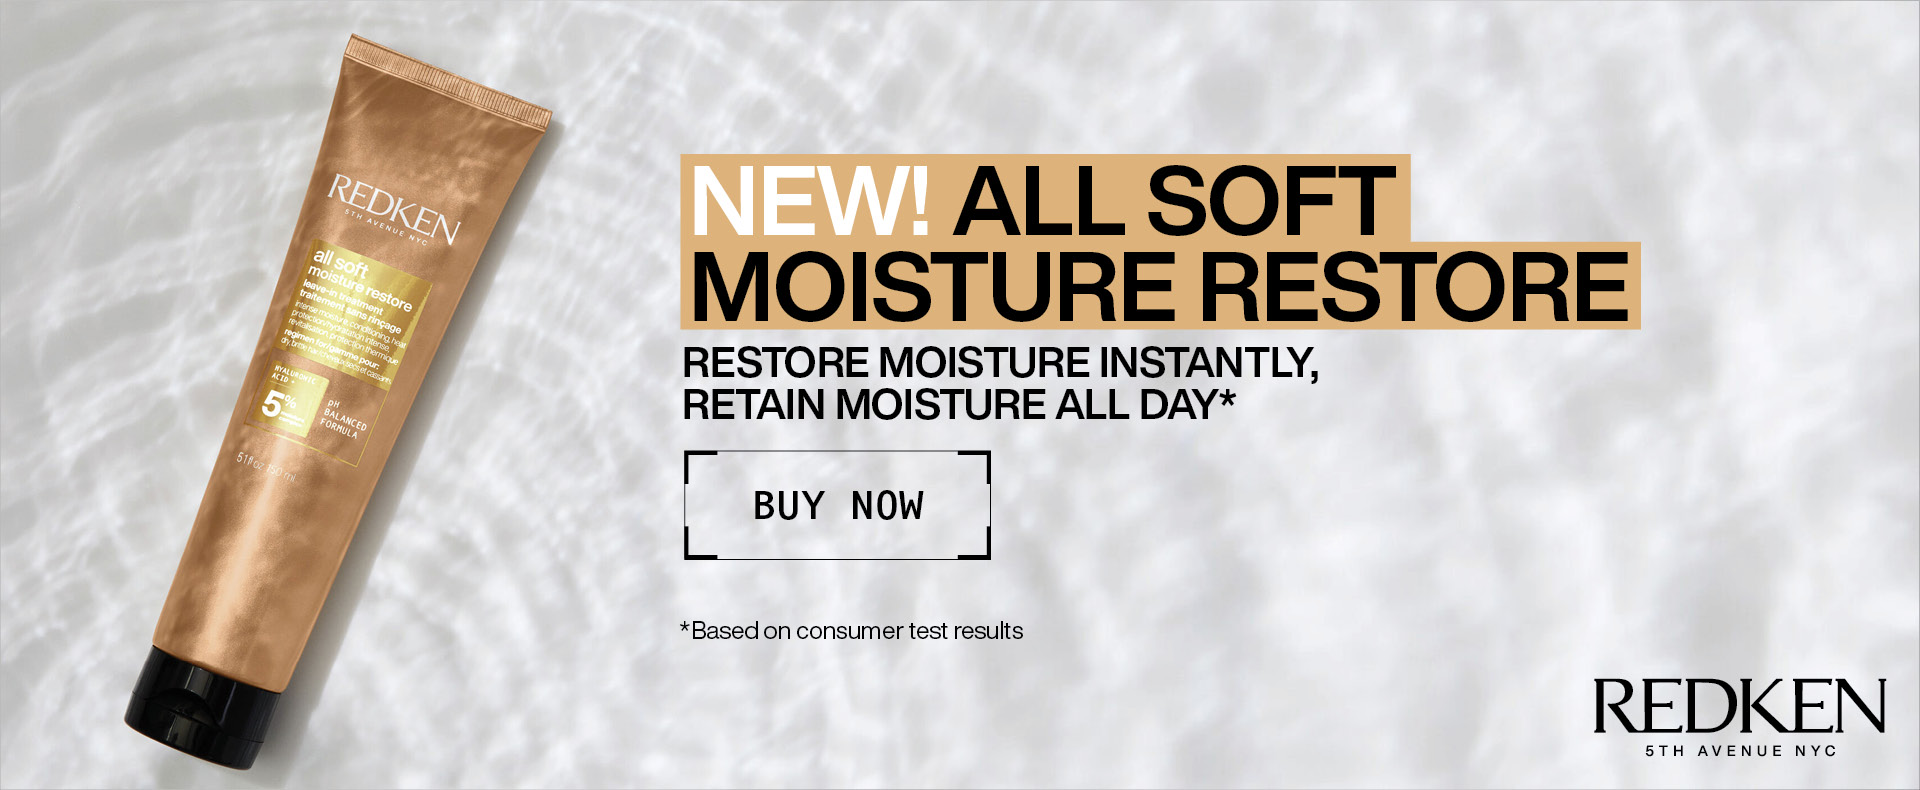 NEW! All Soft Moisture Restore!